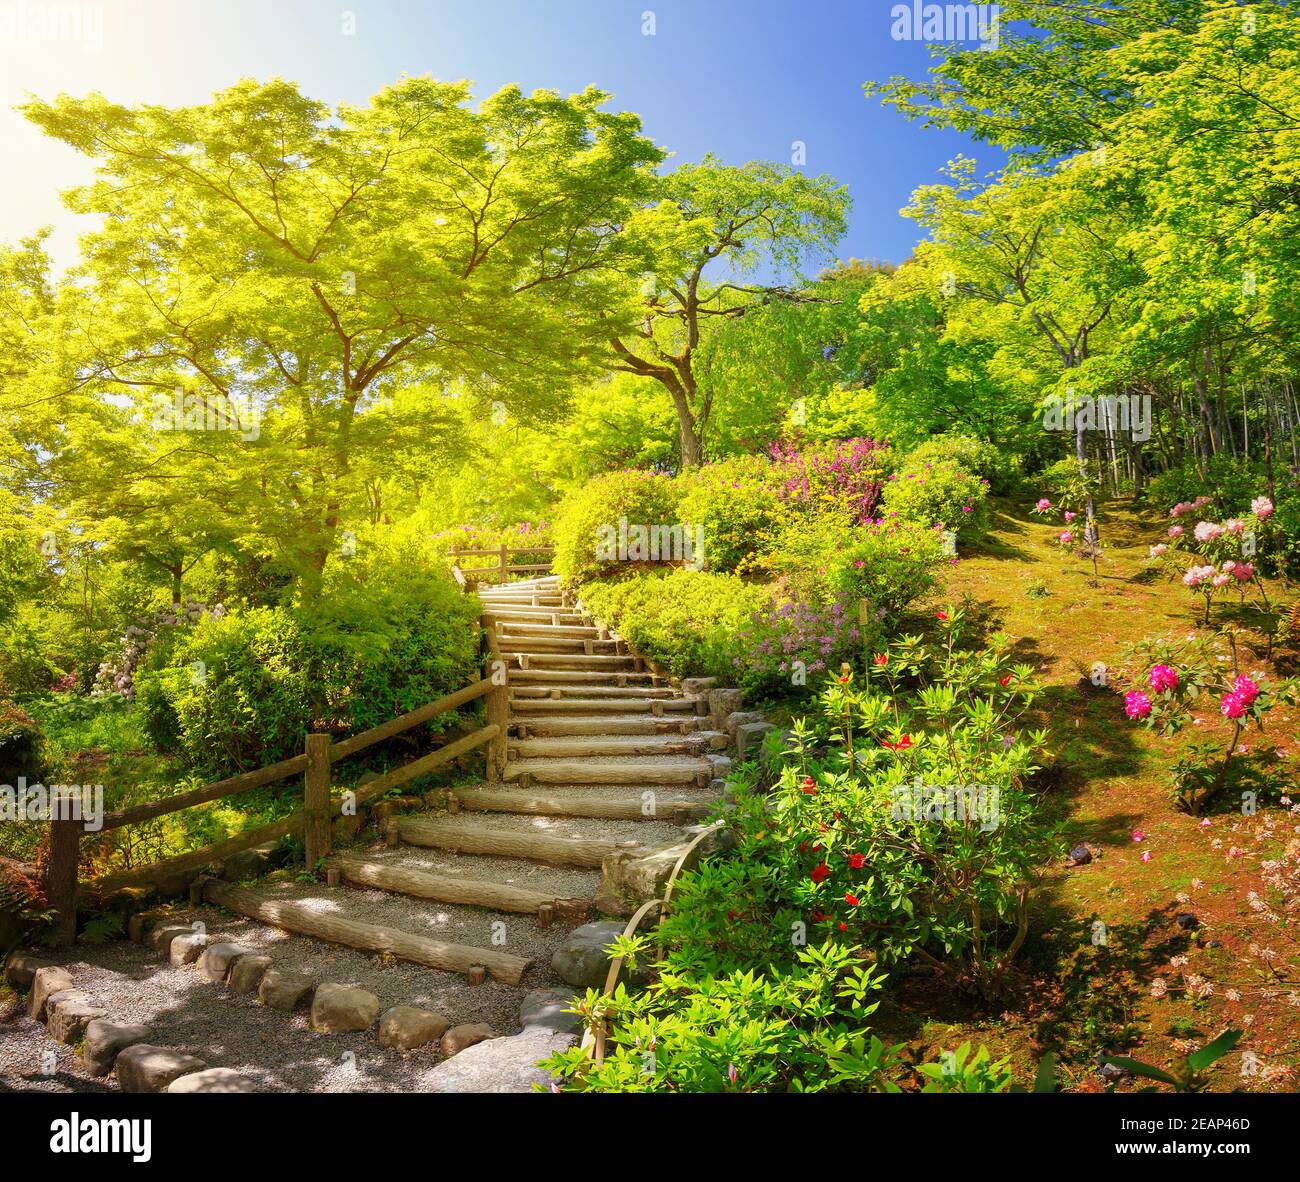 Garden near Tenryu-ji Temple in Kyoto, Japan Stock Photo